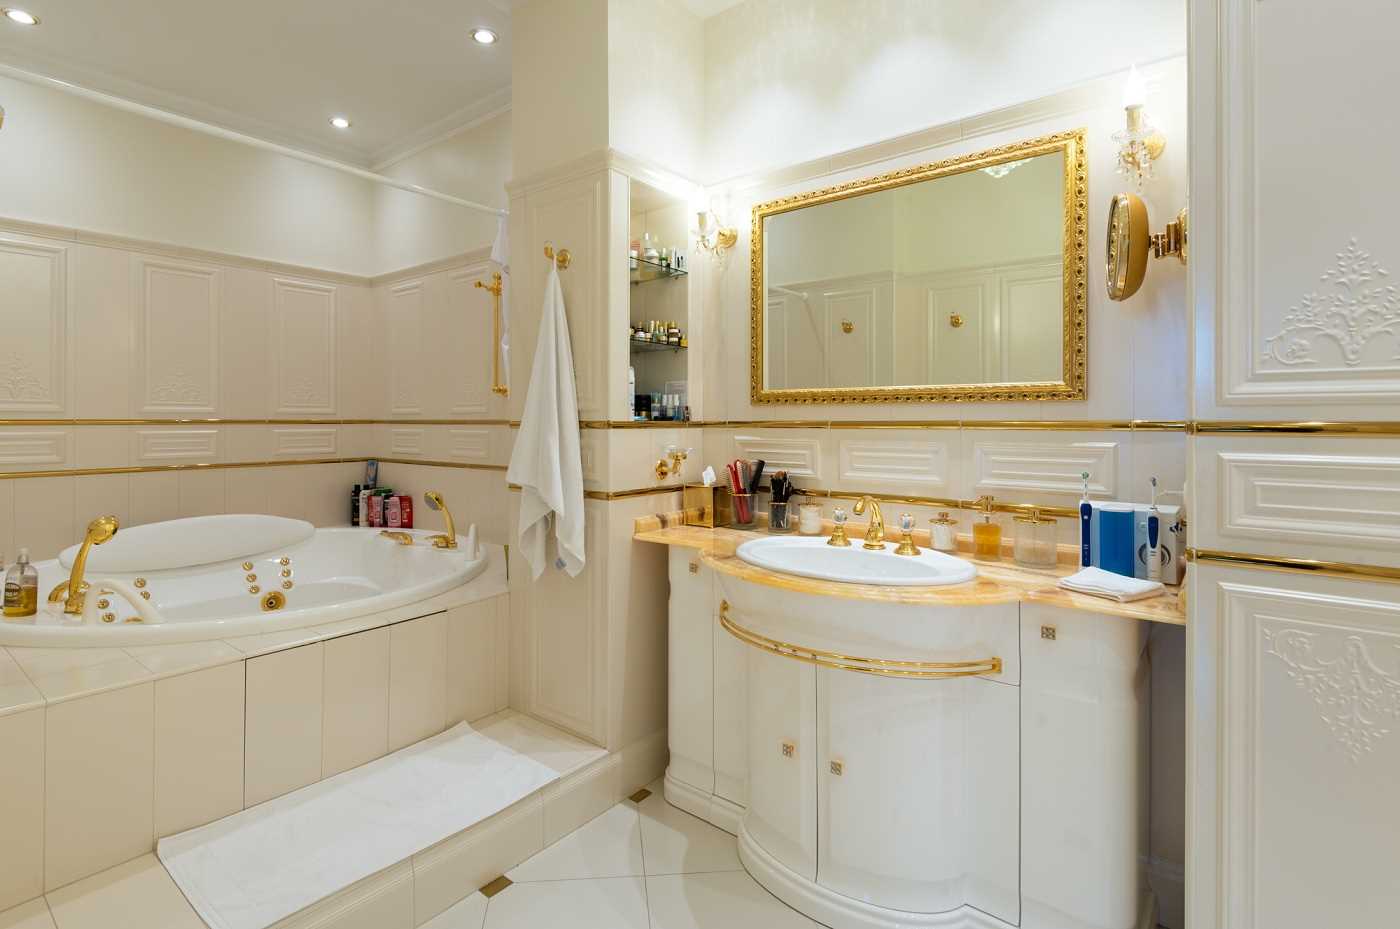 inačica neobičnog dizajna kupaonice u klasičnom stilu